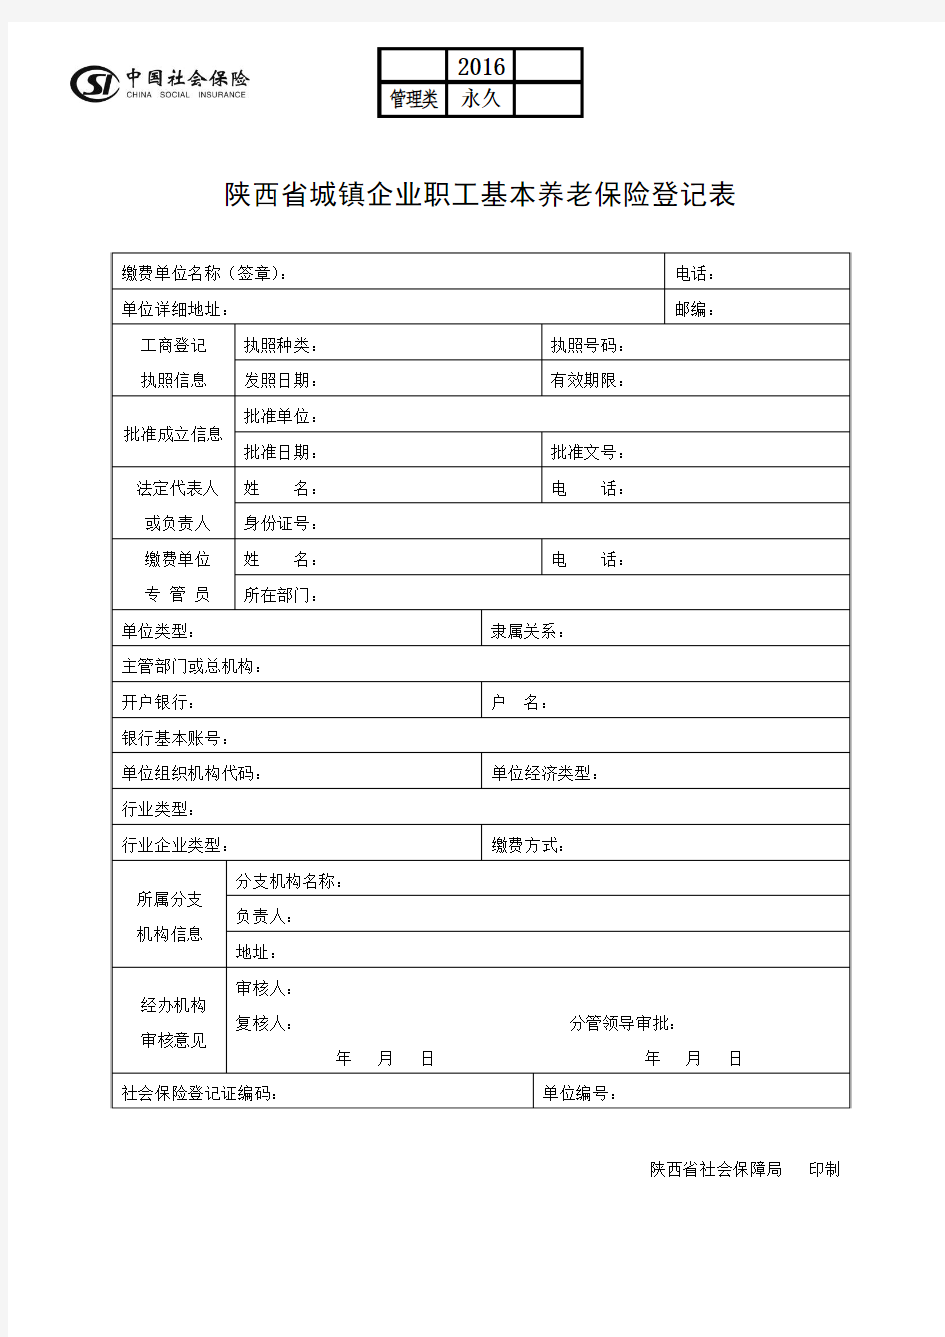 01陕西省城镇企业职工基本养老保险登记表